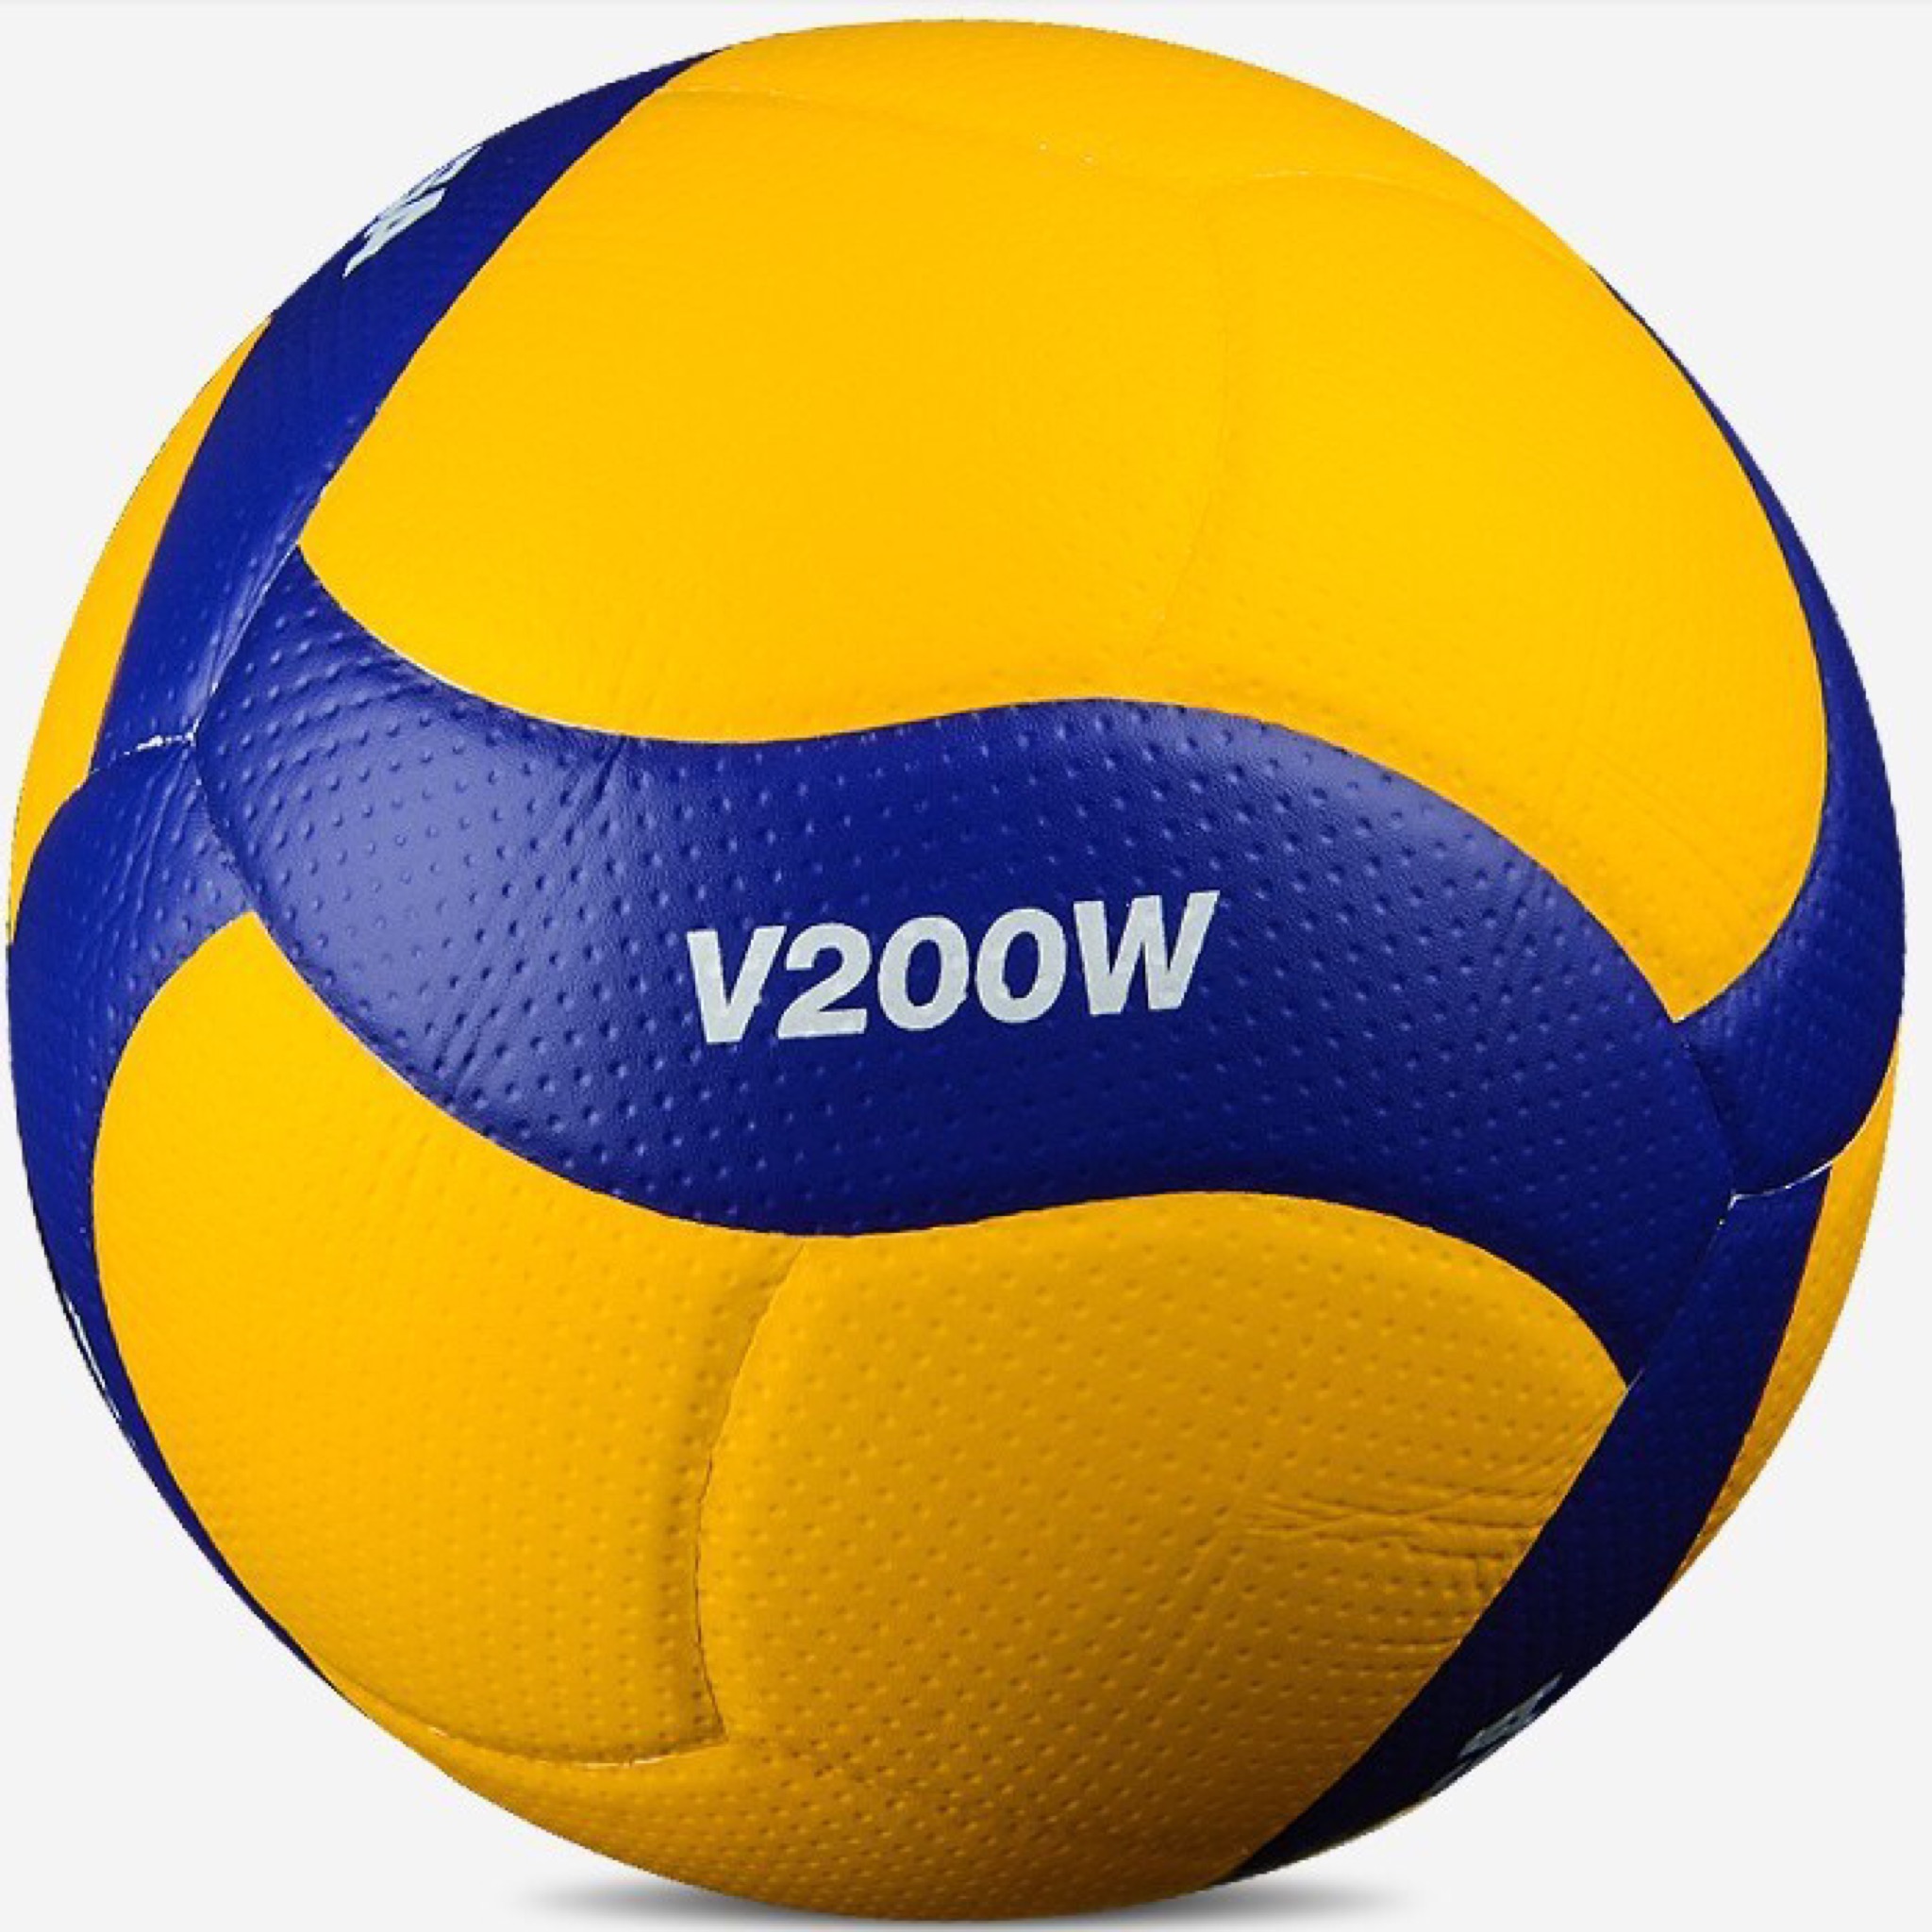 نکته خرید - قیمت روز توپ والیبال مدل V200W خرید